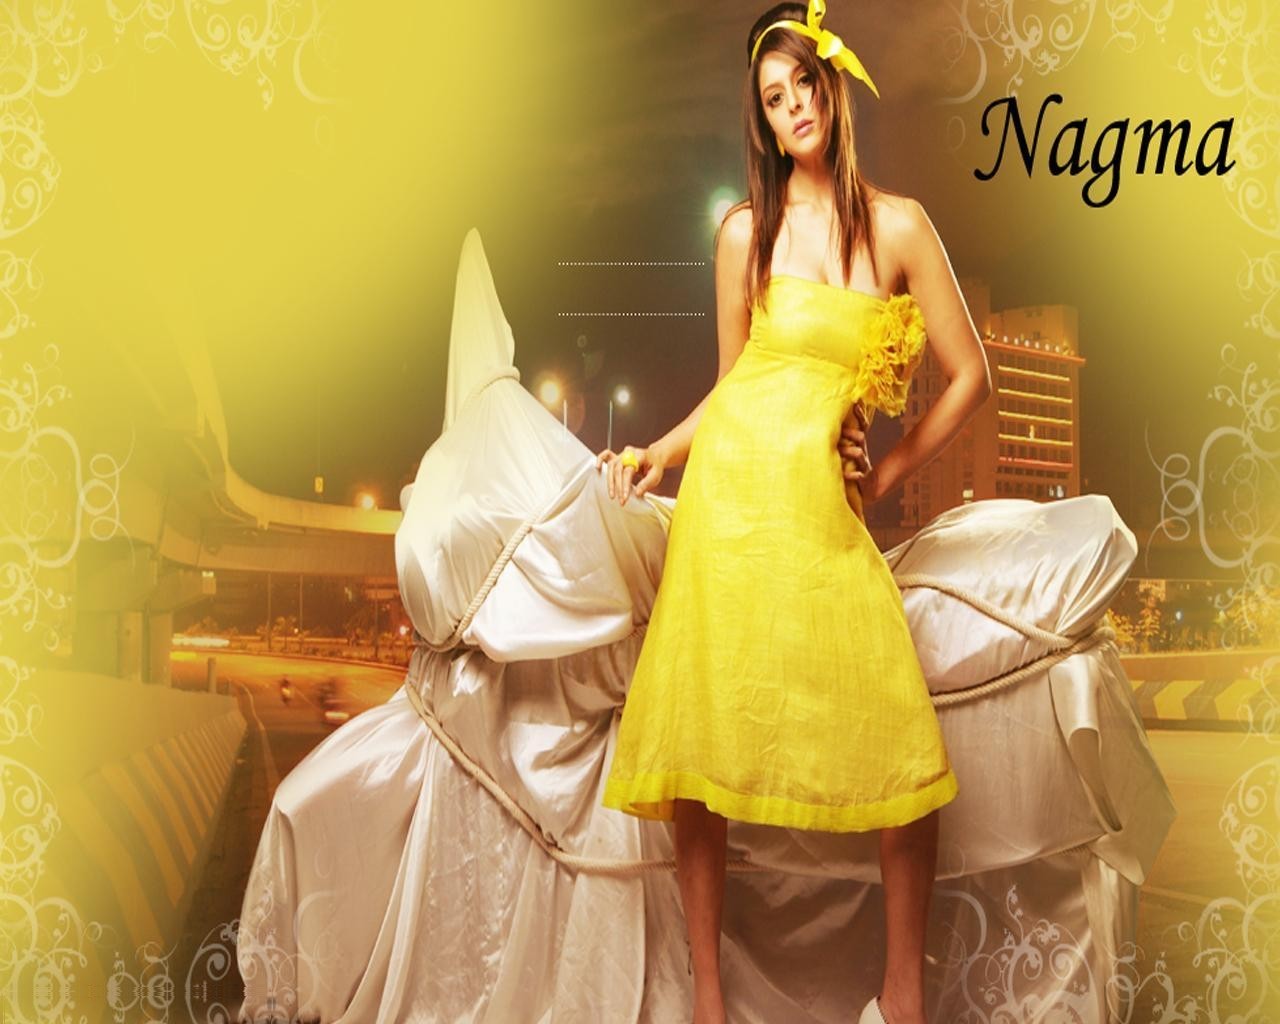 Nagma Actress Yellow Dress Pictures